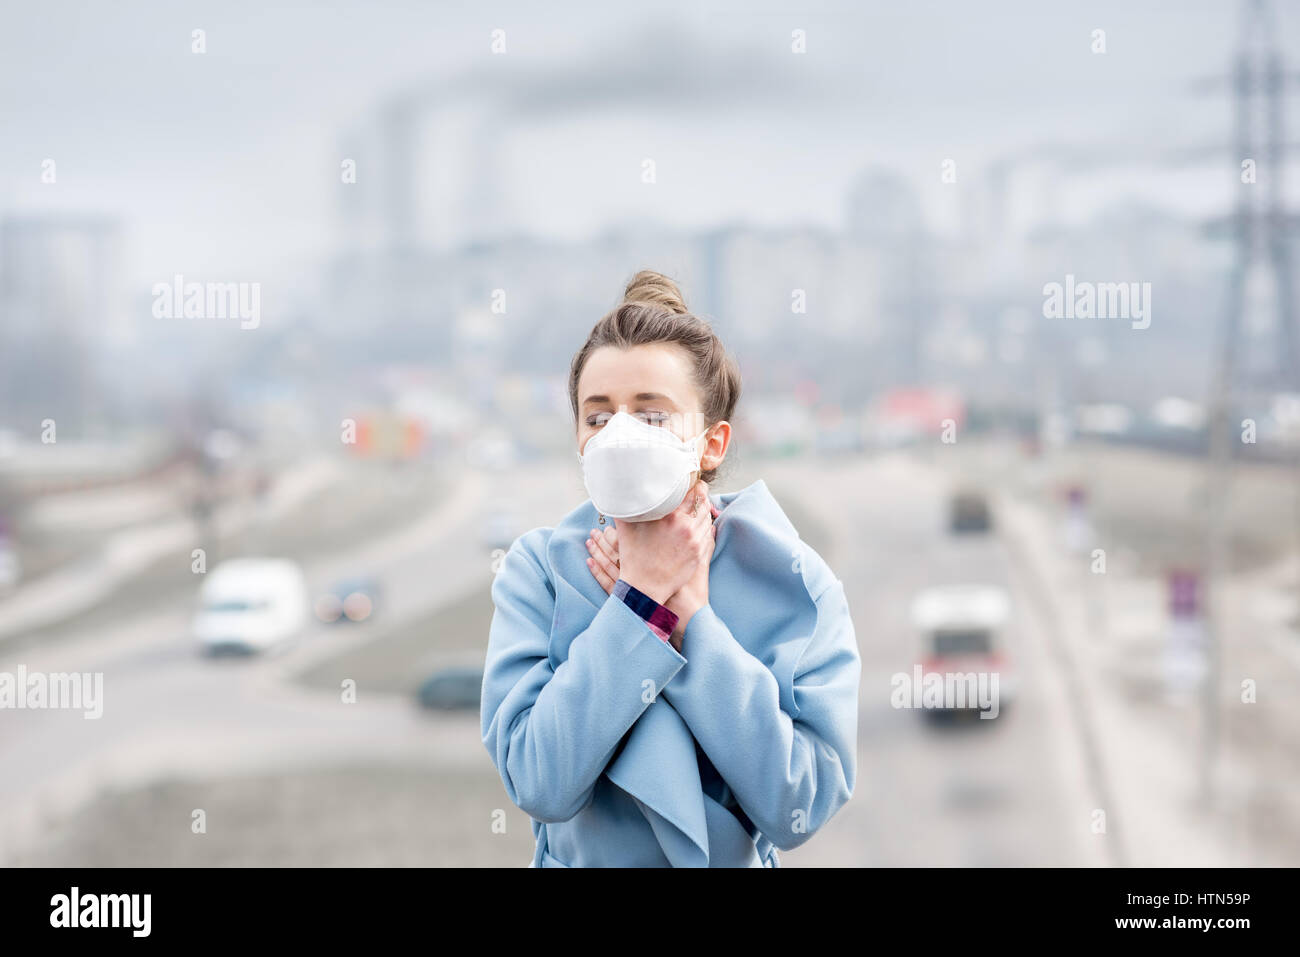 Запахло в воздухе мочой. Загрязнение воздуха люди в масках. Запахи города. Смог и люди. Загрязнение воздуха девушка.